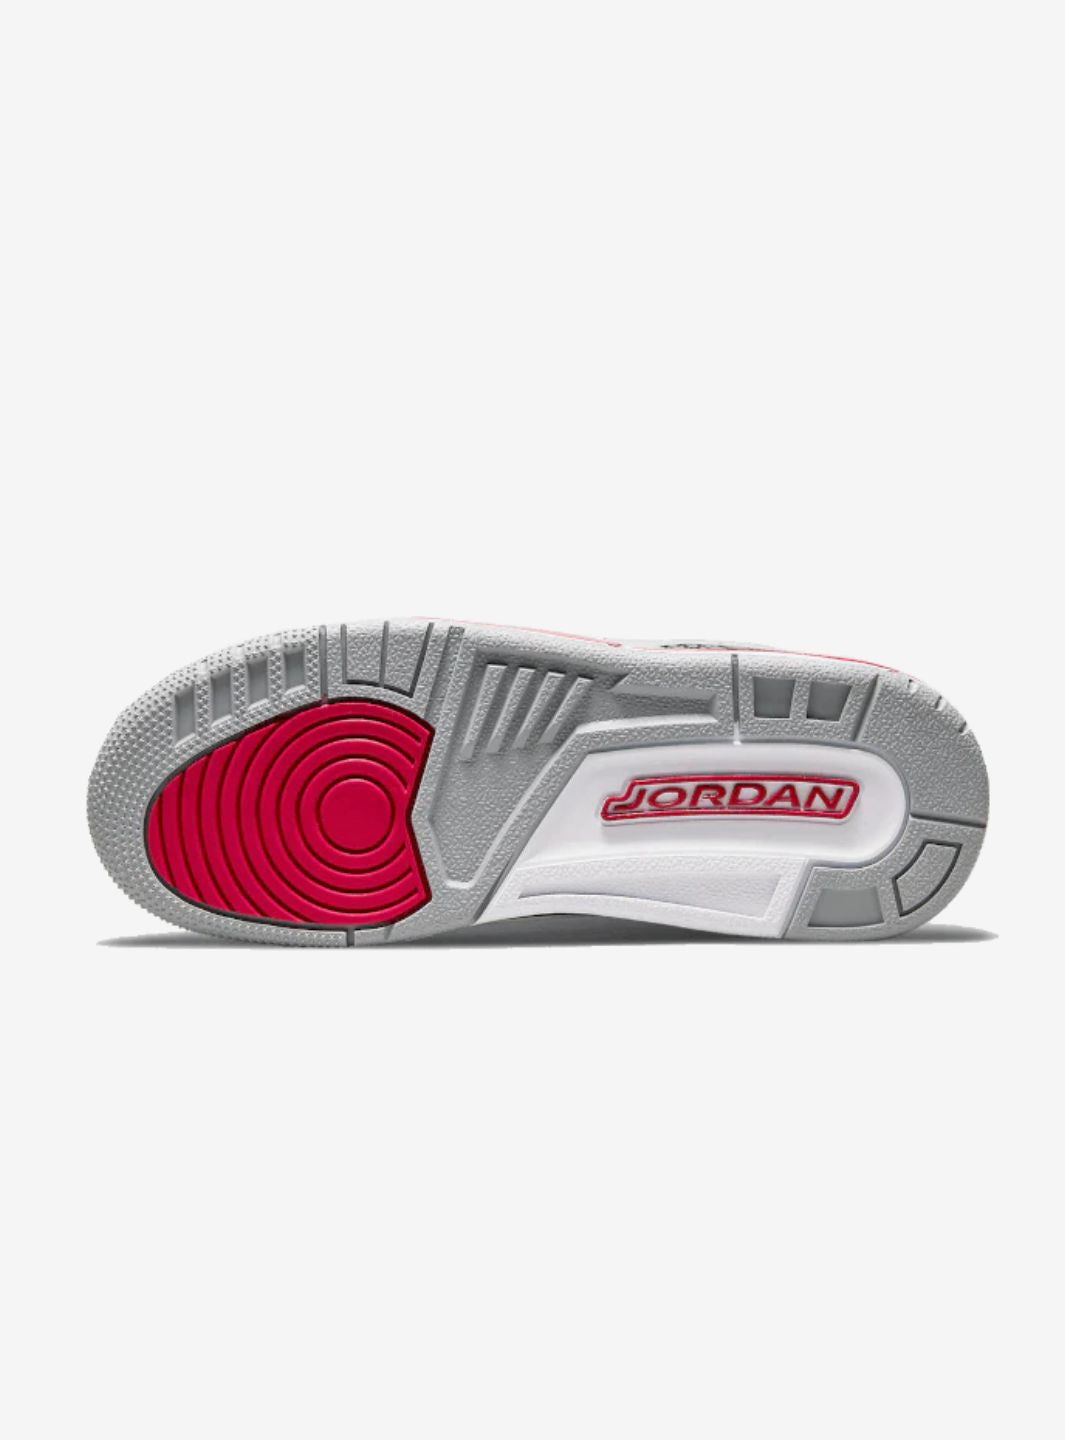 Air Jordan 3 Retro Cardinal Red - CT8532-126 | ResellZone